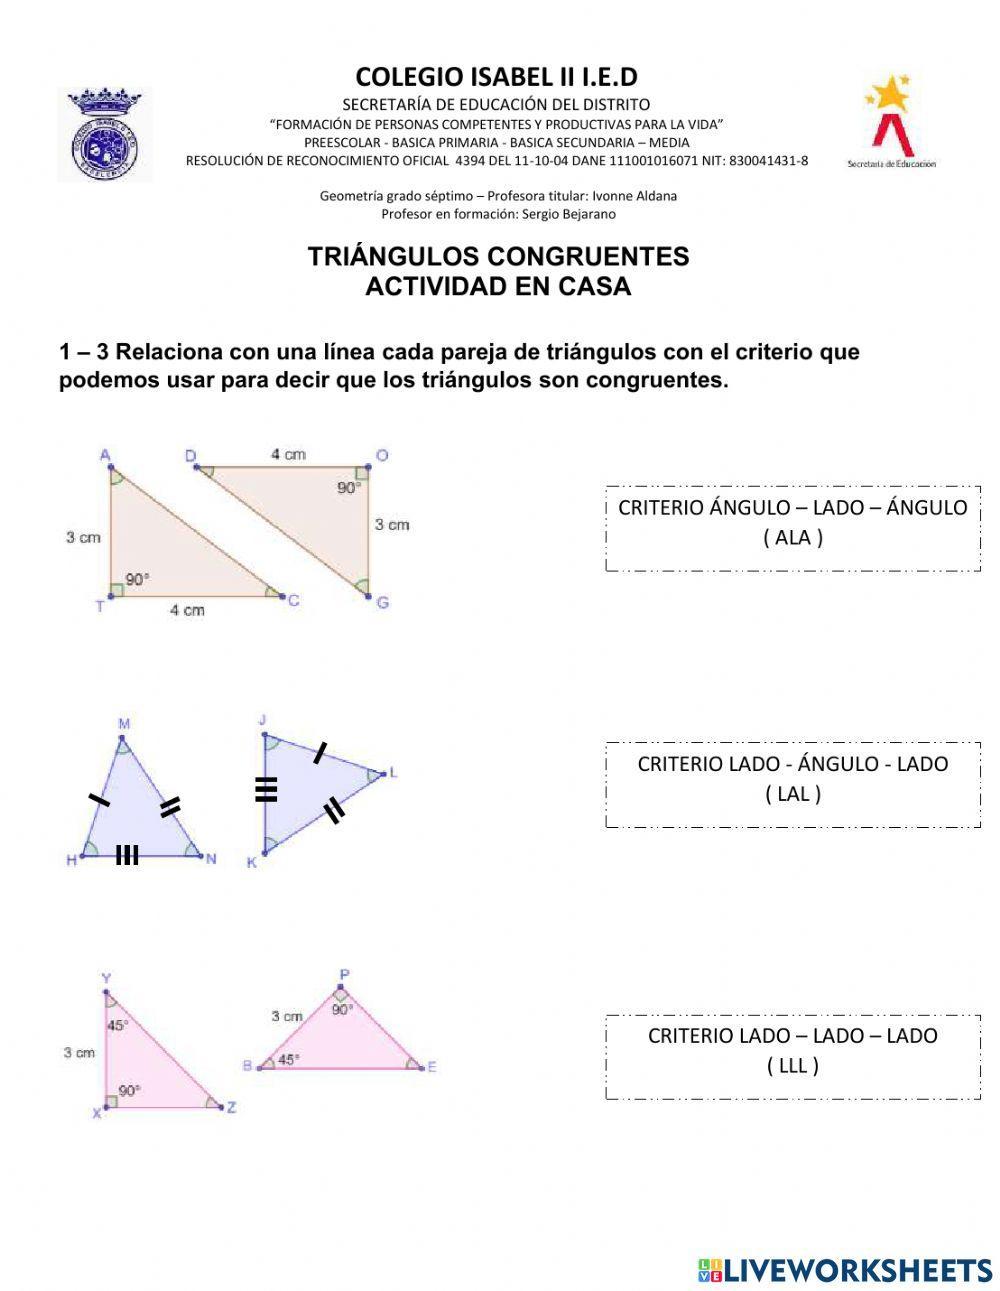 Criterios de Congruencia Triángulos 702